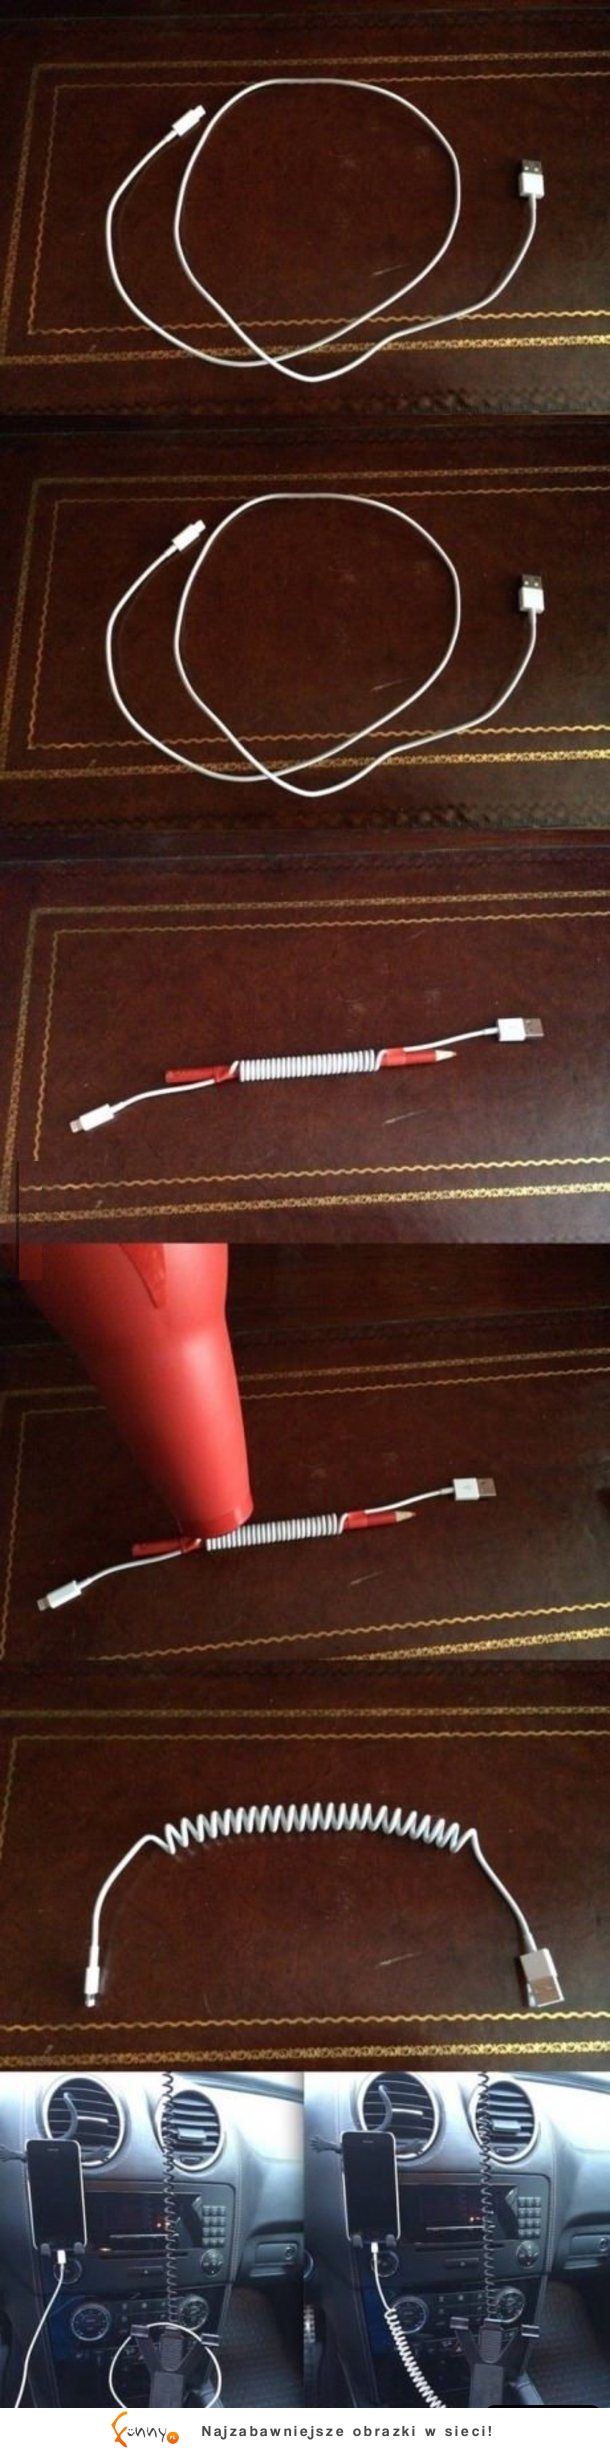 Magiczny sposób na kabel od ładowarki! :D